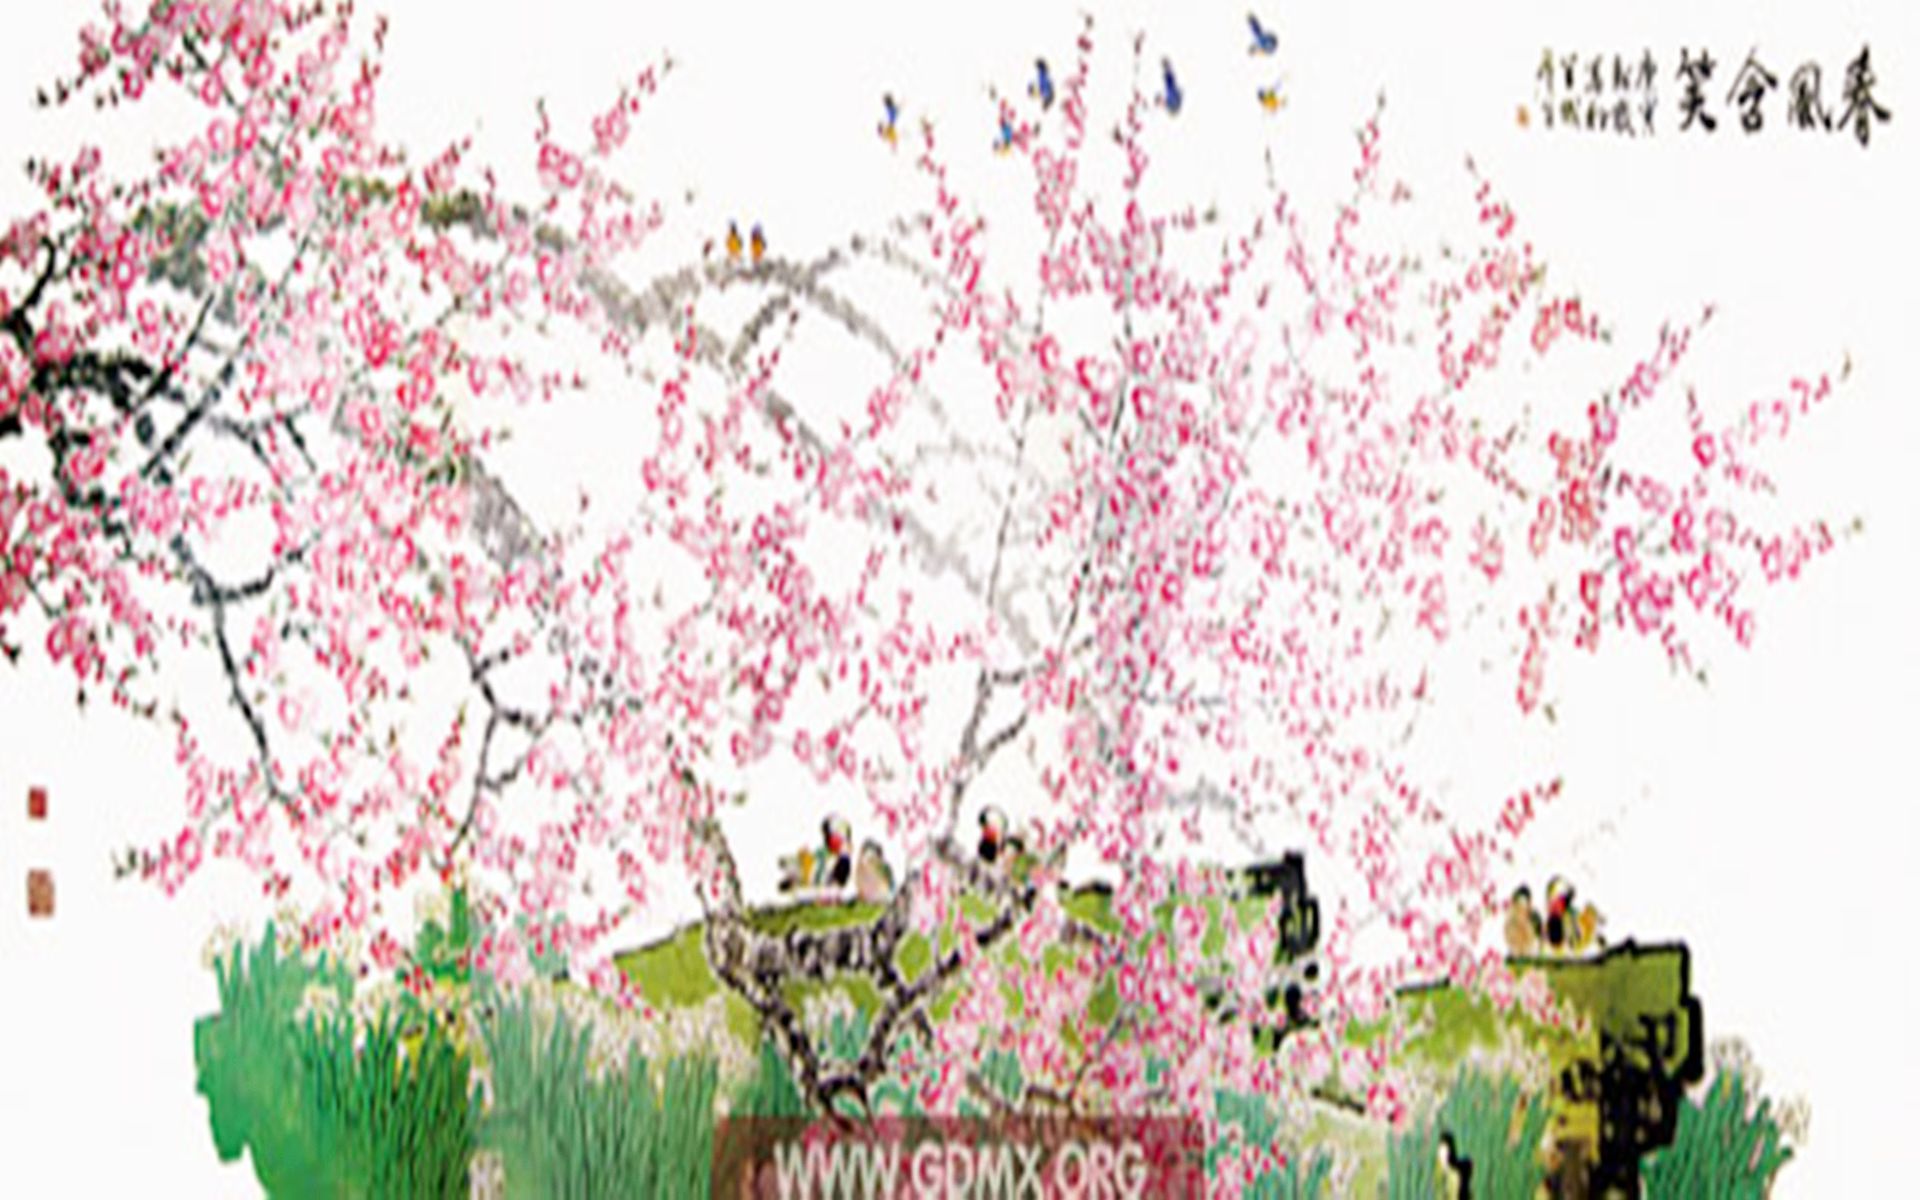 2010年9月，许家印曾以1,120万元人民币的天价买下岭南派画家周彦生的代表作《春风含笑》。（广东美术协会）